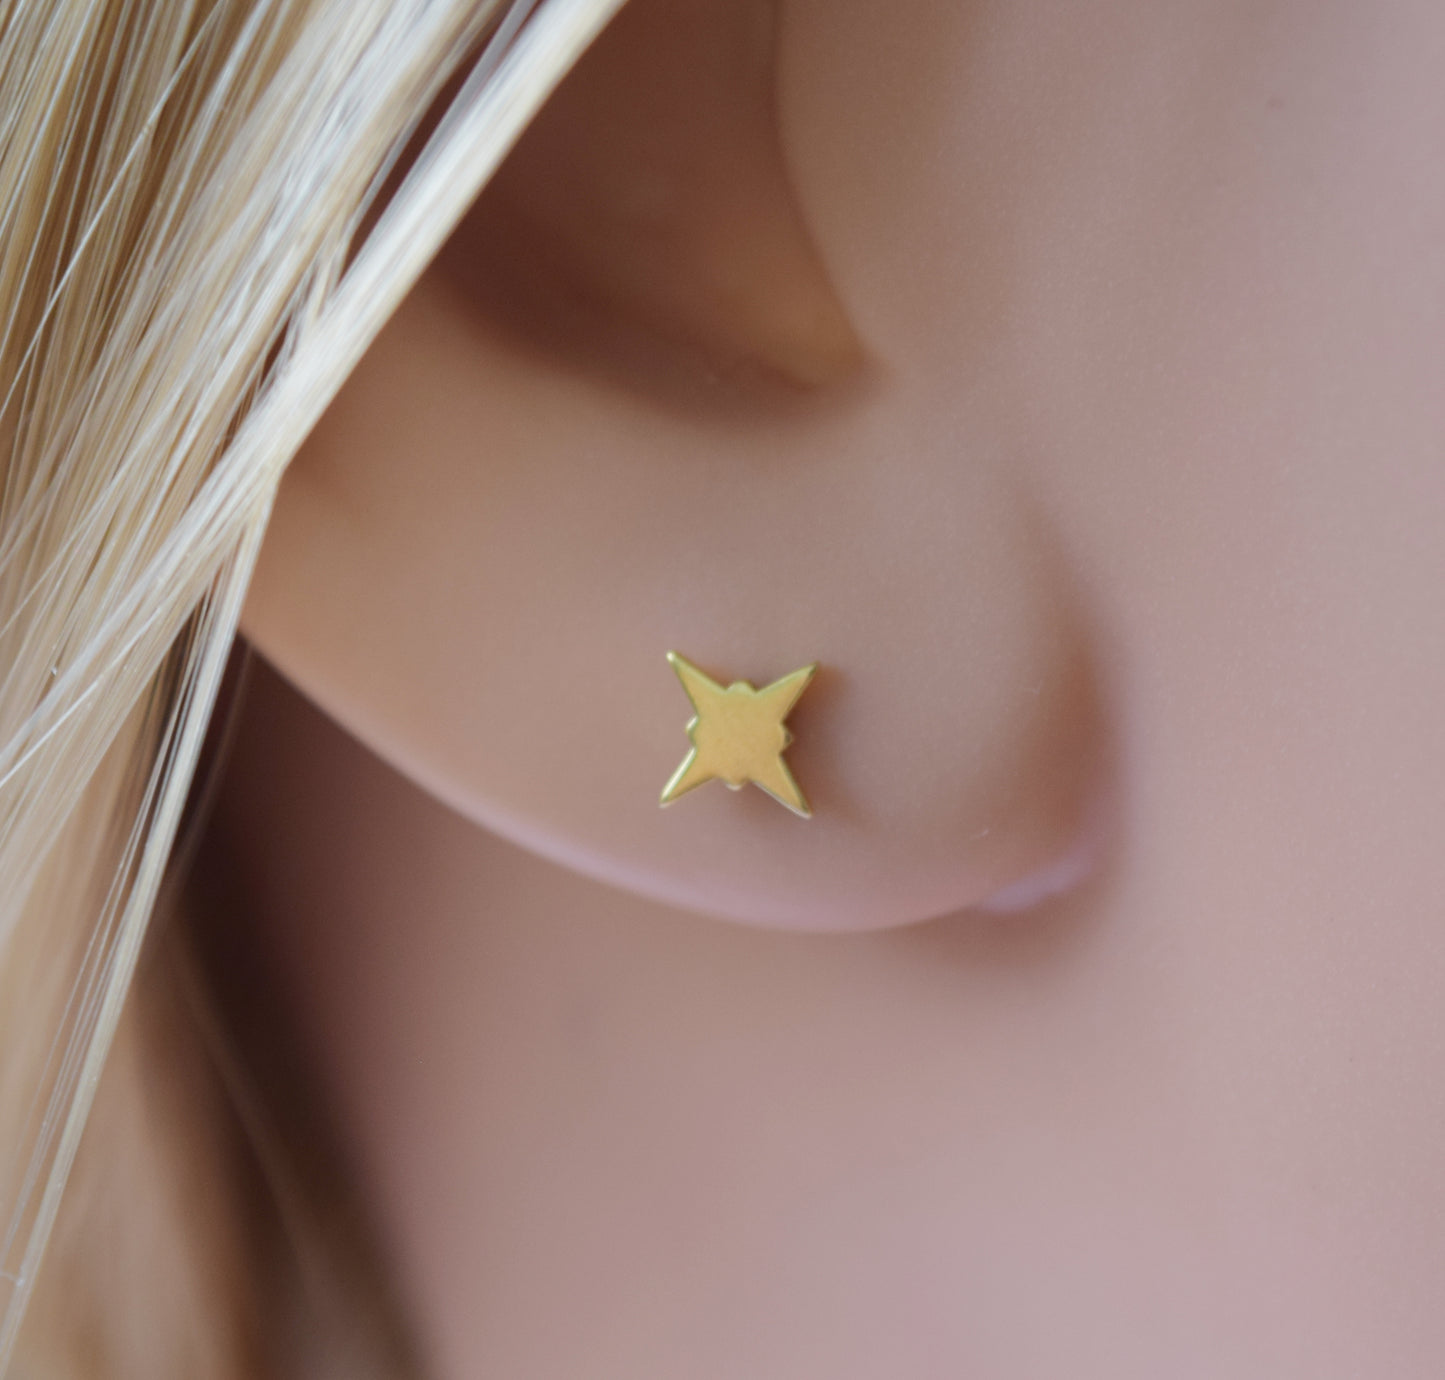 24K Gold Vermeil pole star stud earrings